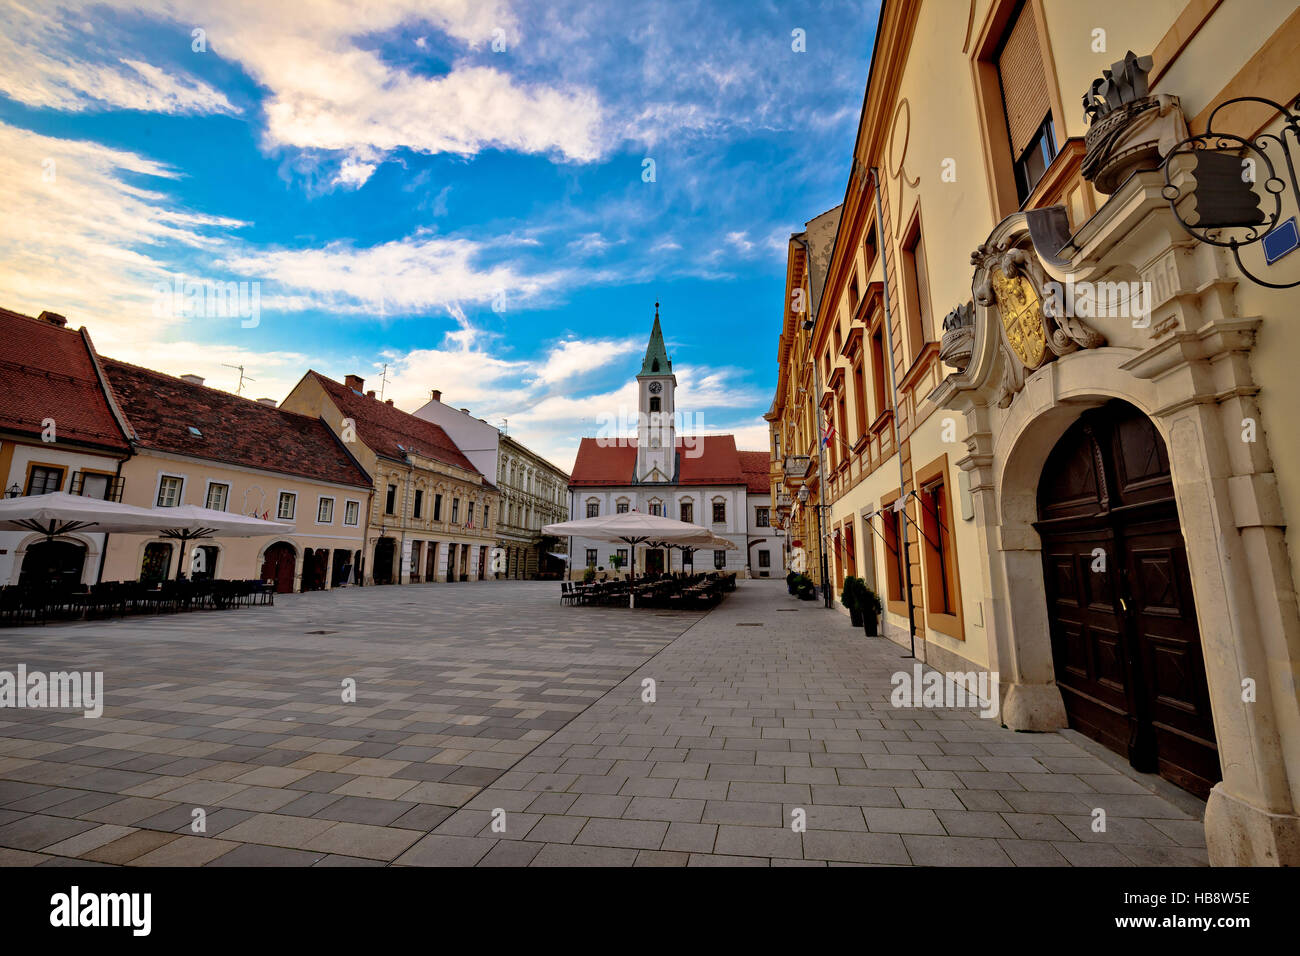 Varazdin baroque architecture in town center Stock Photo